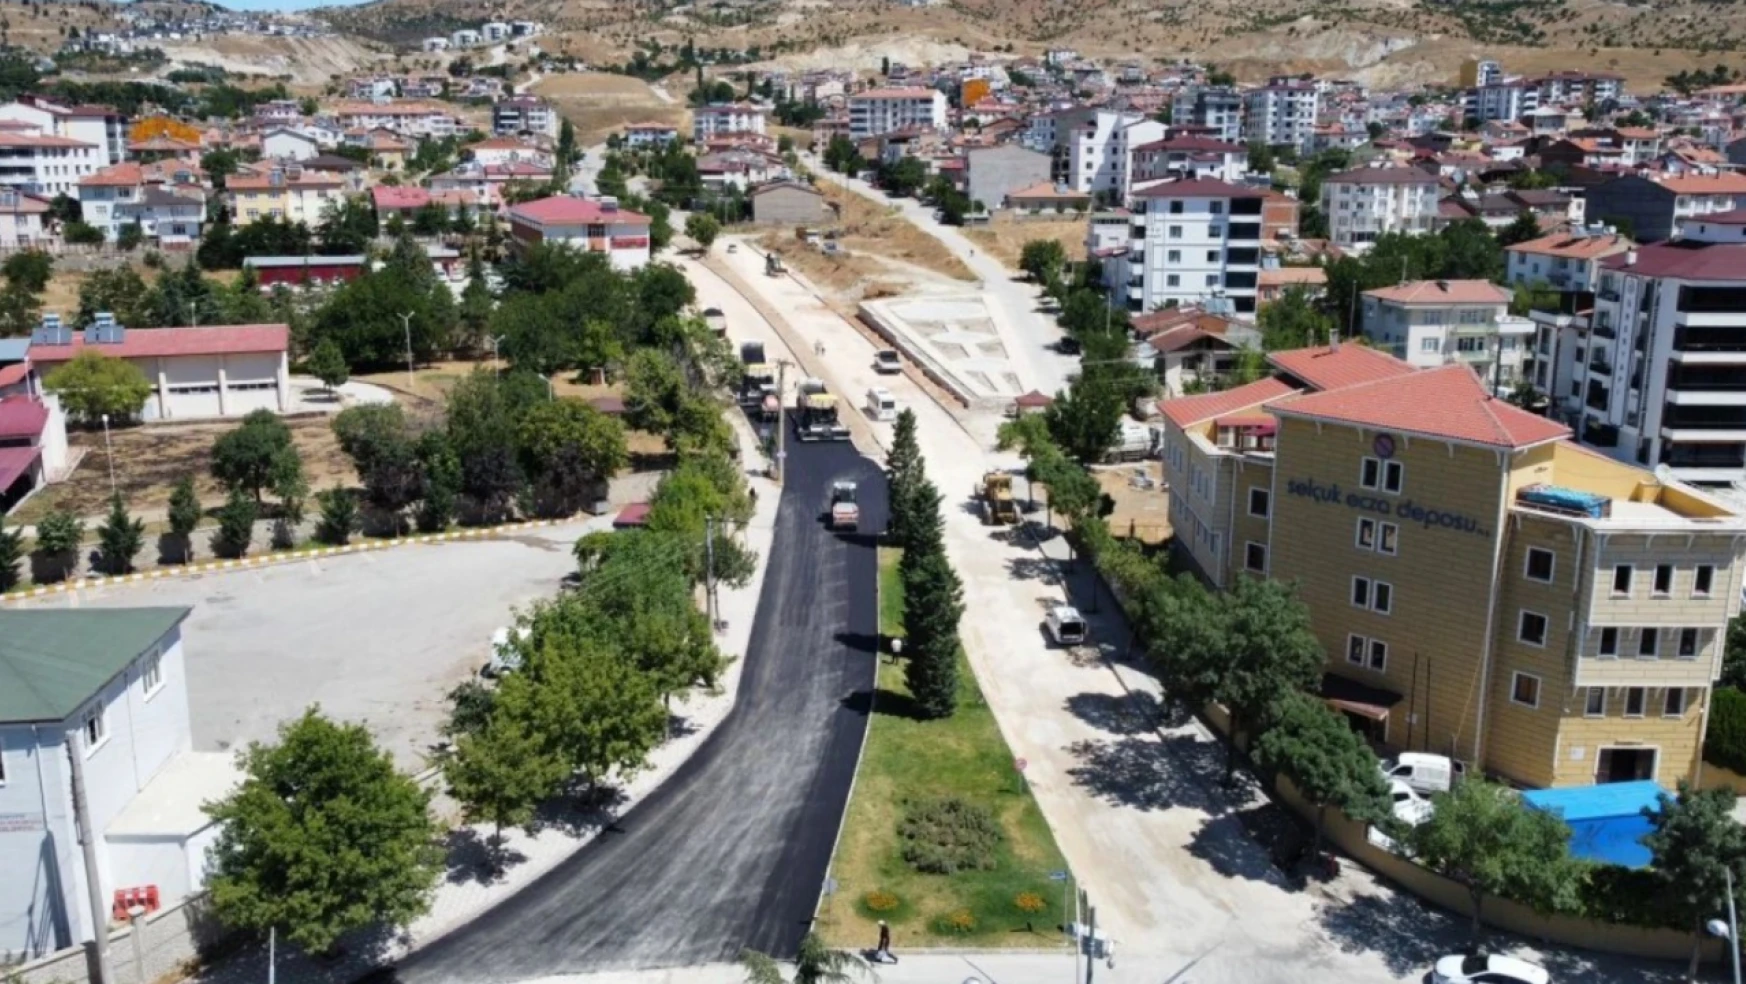 Elazığ belediyesi tarafından Yıldızbağları yolunda asfalt yenileme çalışması yapılıyor